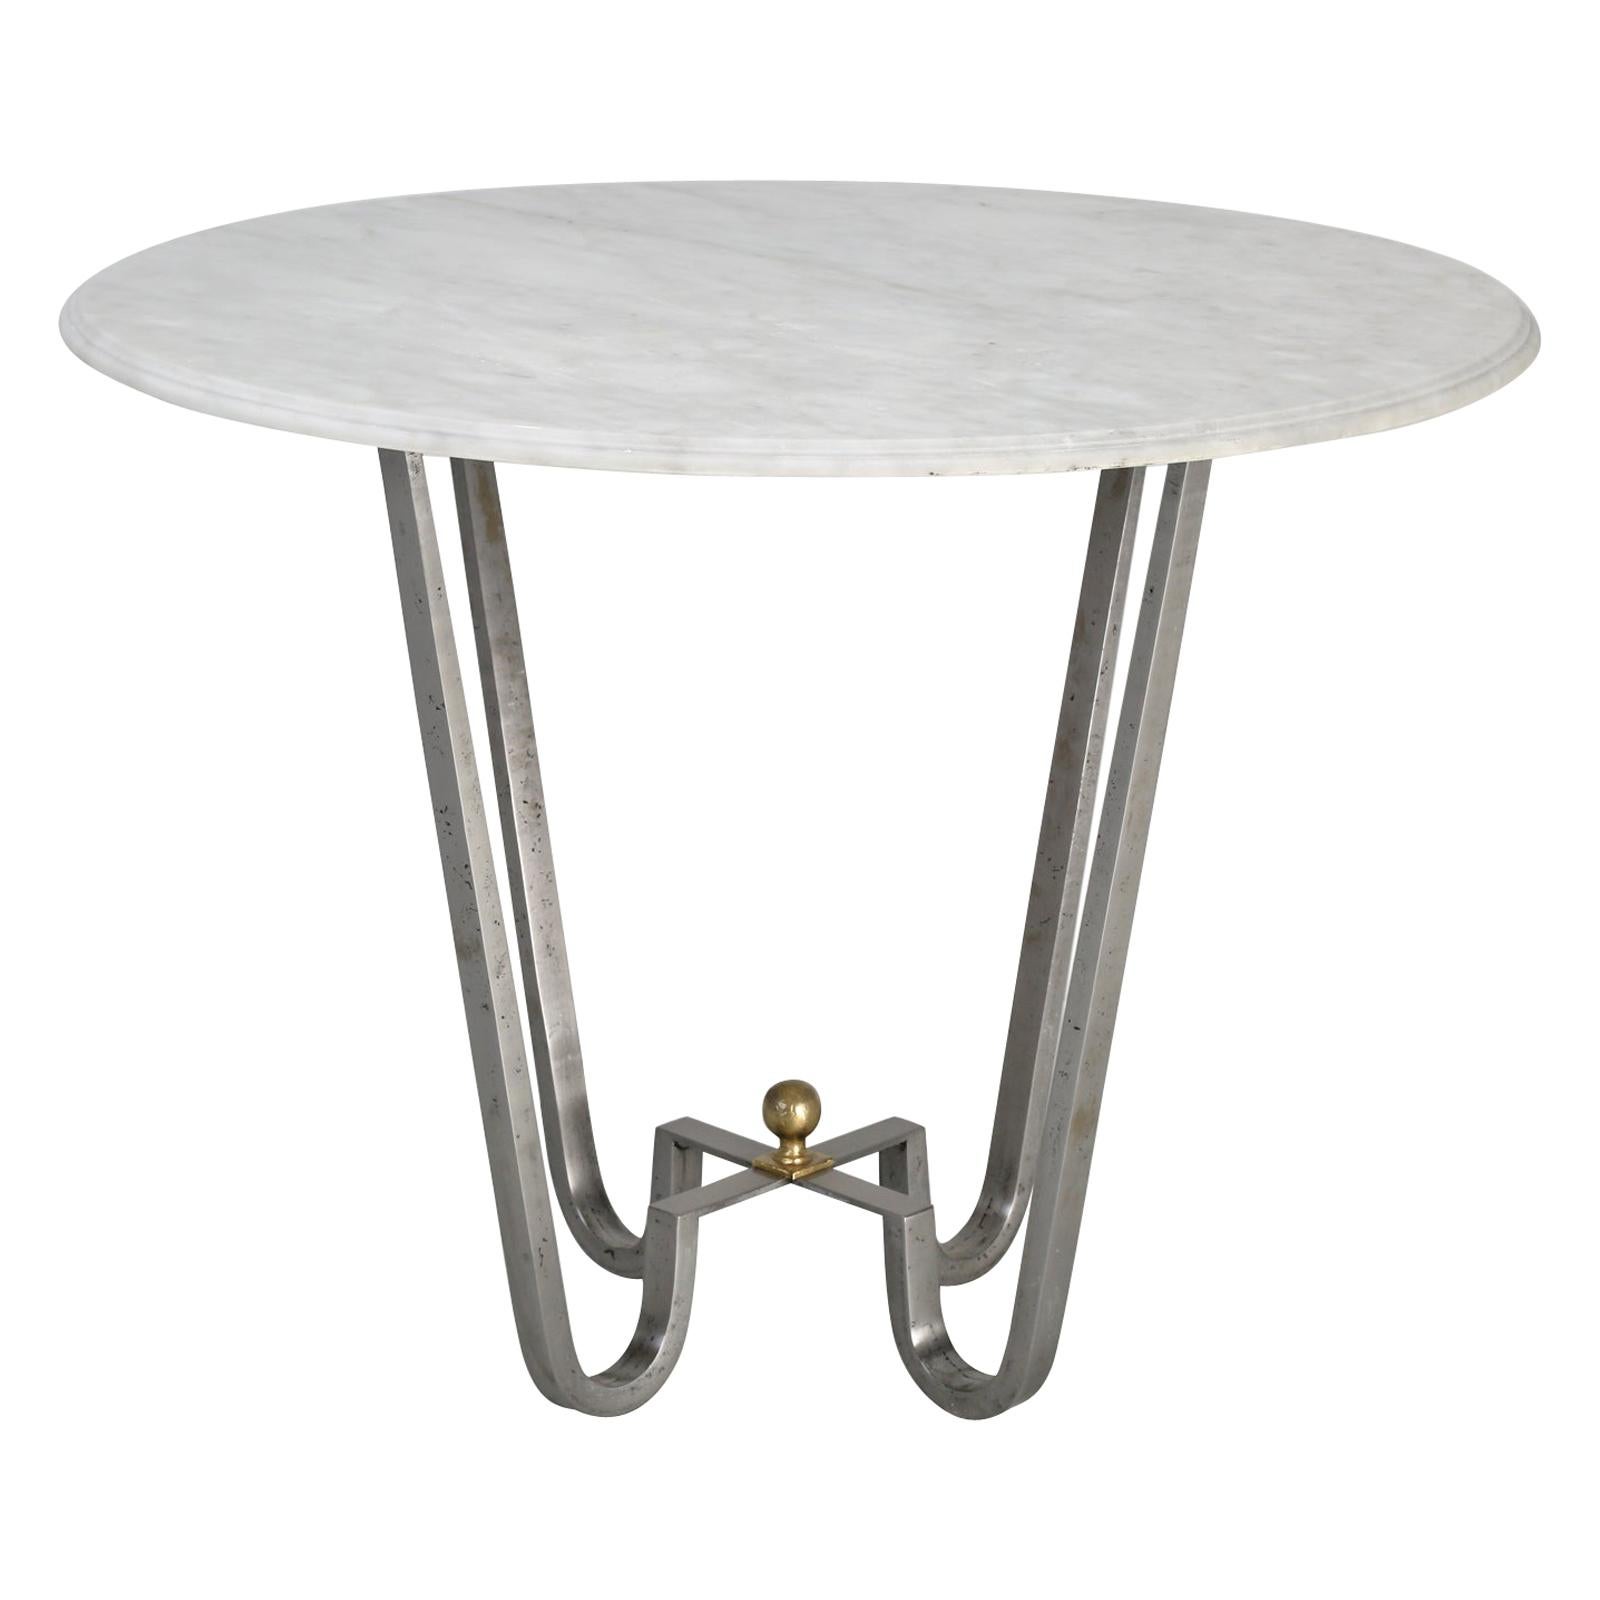 Tisch oder Beistelltisch aus brüniertem Stahl, auf Bestellung gefertigt